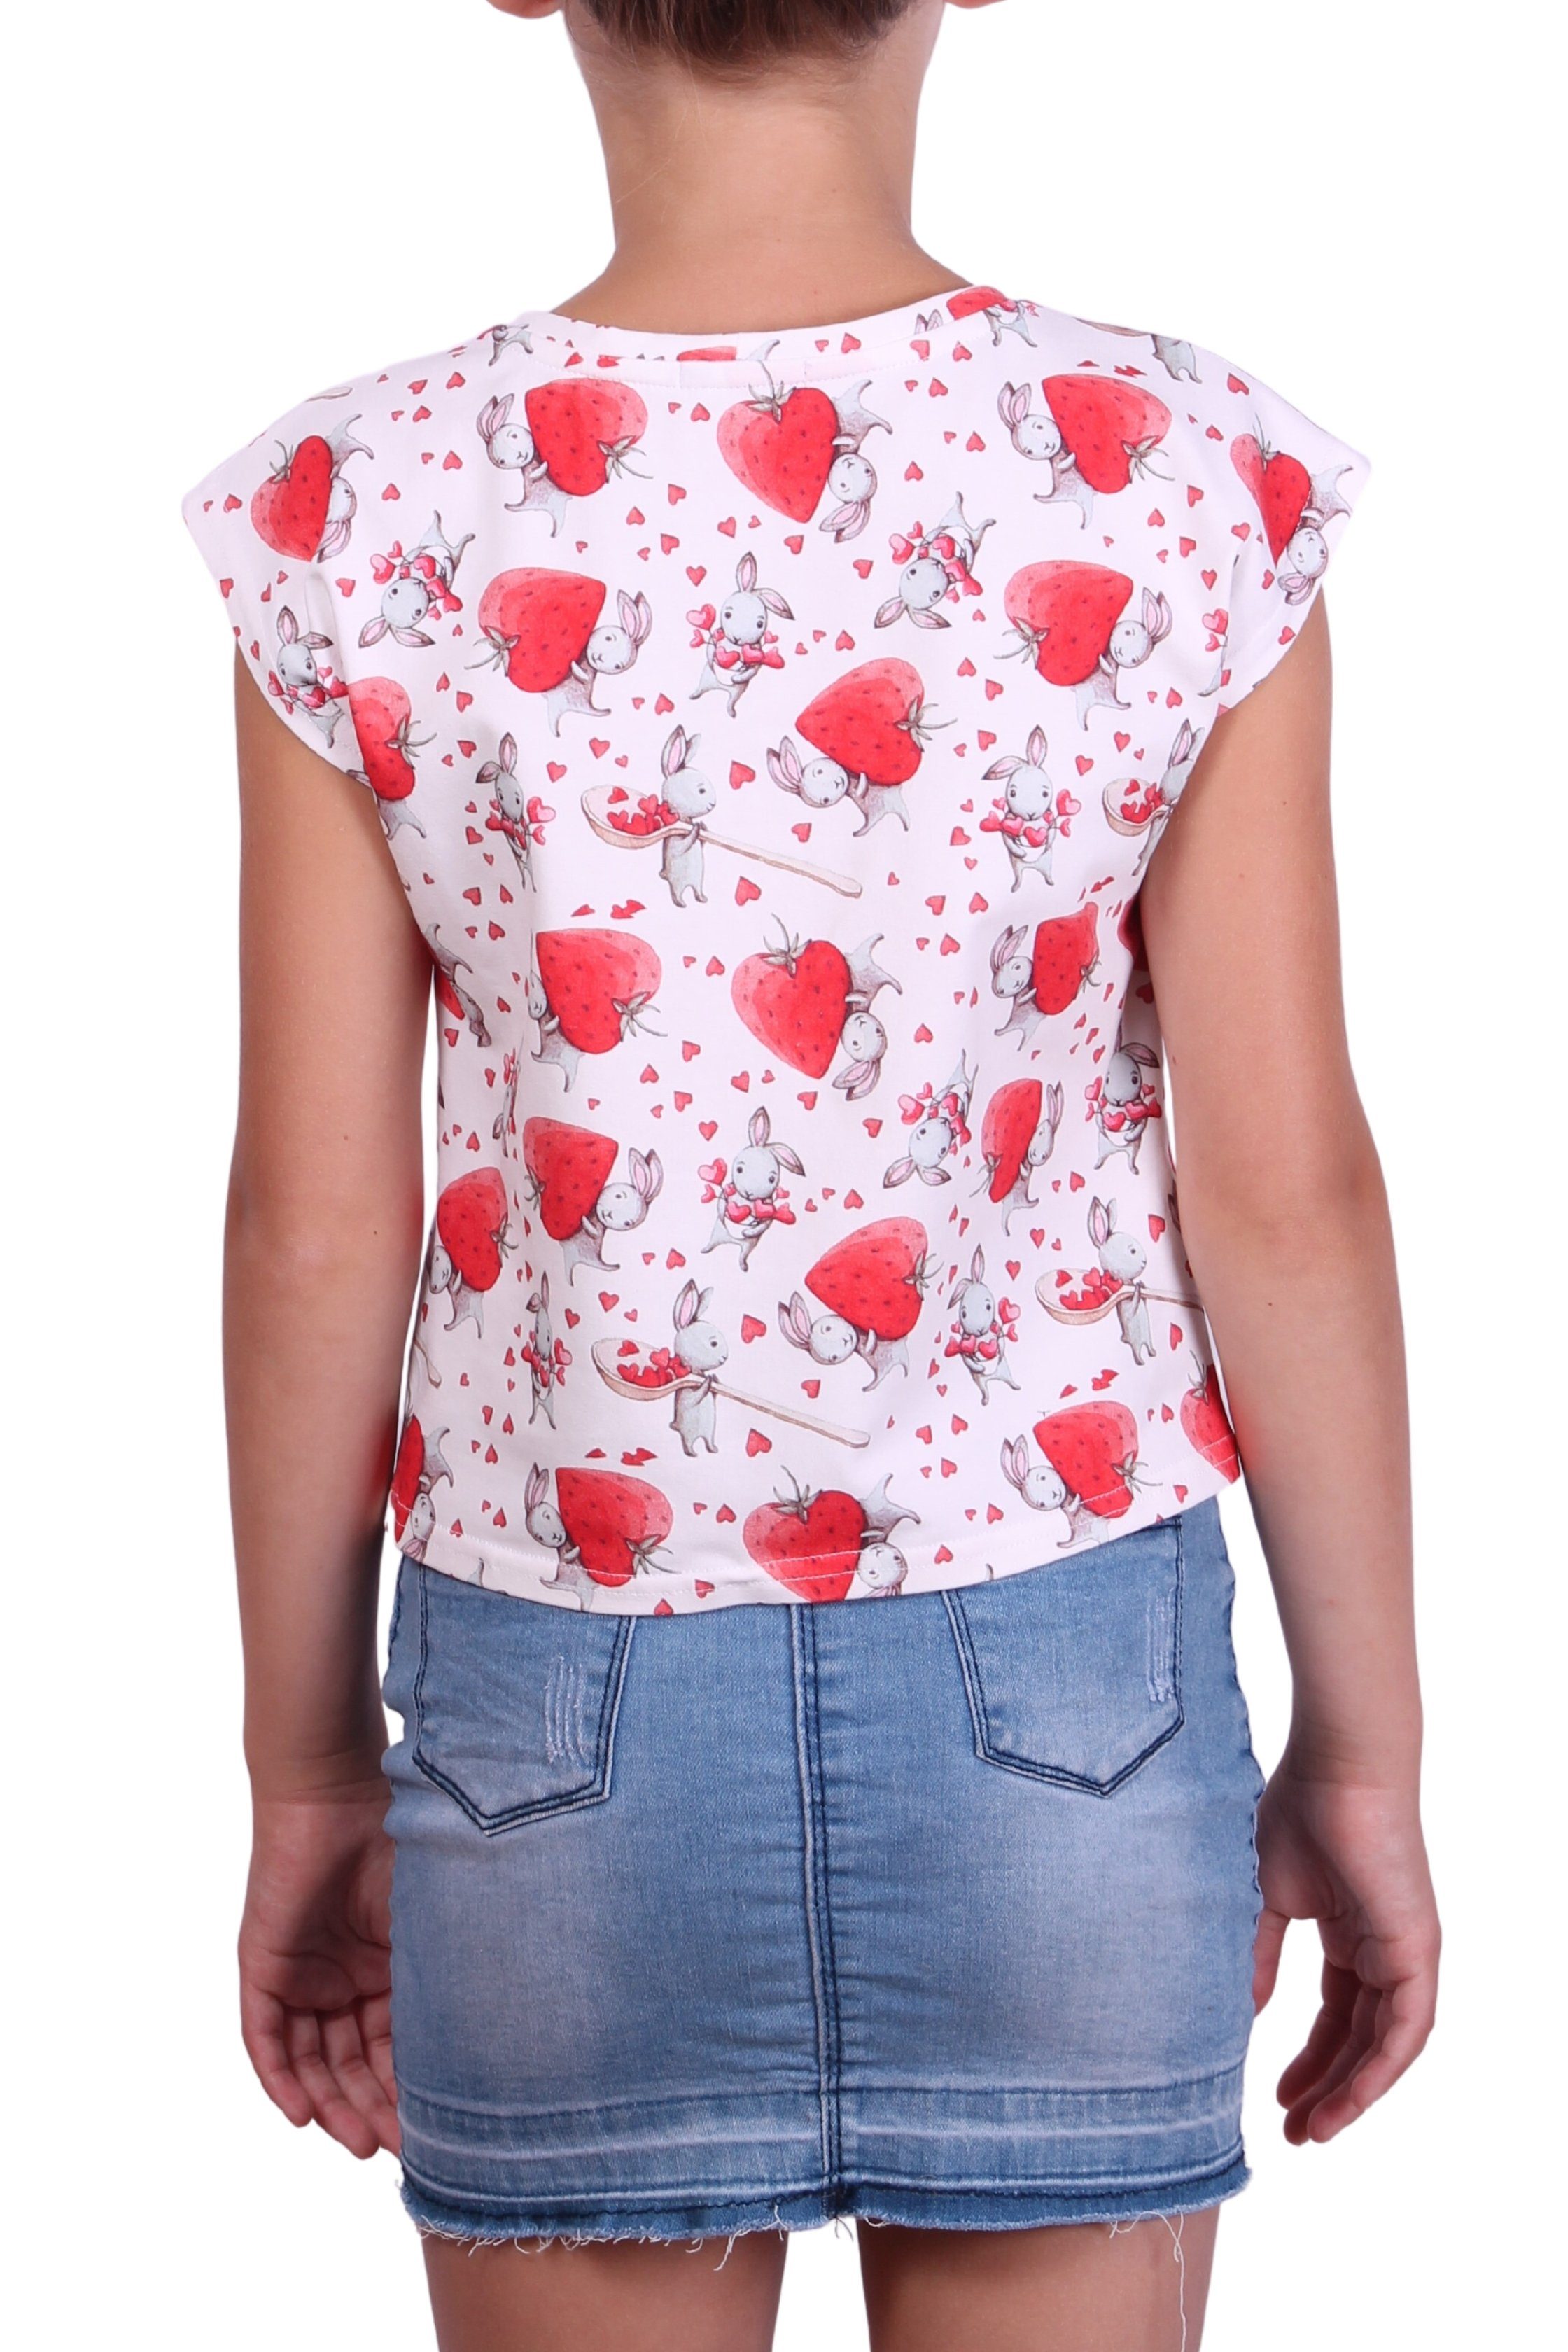 Mädchen T-Shirt mit Print-Shirt für Alloverprint, coolismo Erdbeeren-Häschen-Motiv Rundhalsausschnitt, Baumwolle